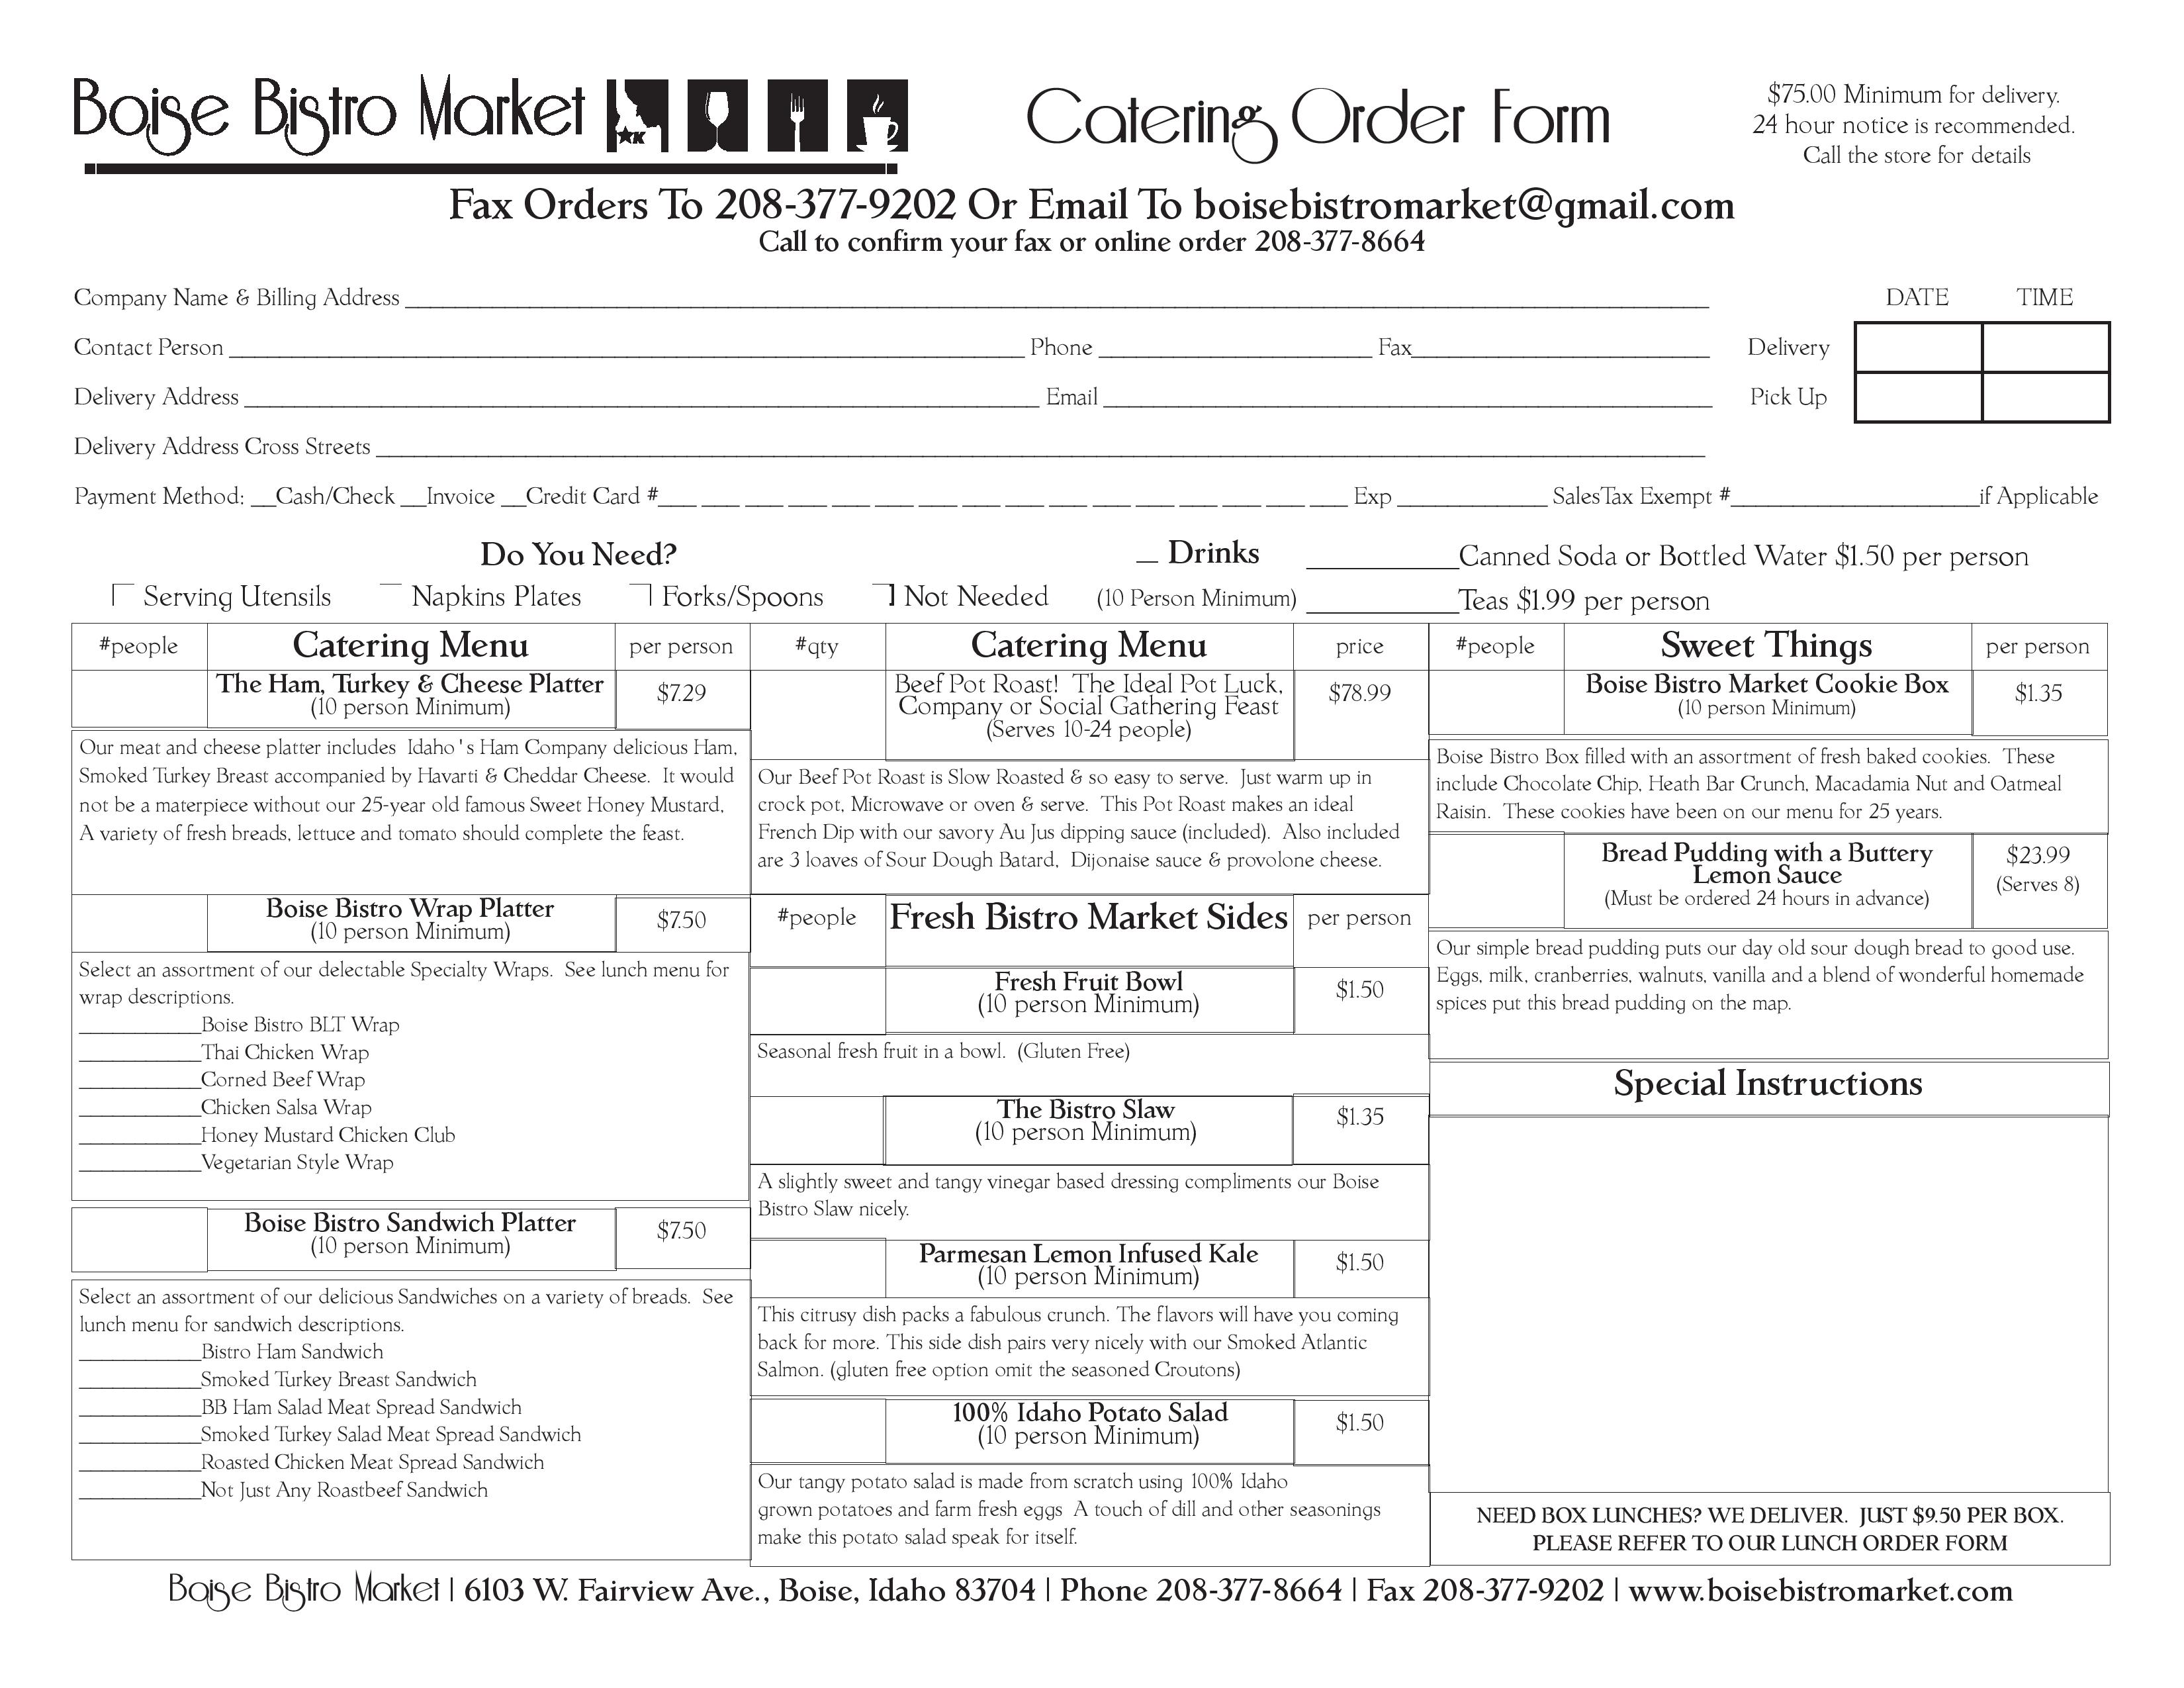 Catering Menu/Order Form   Boise Bistro Market